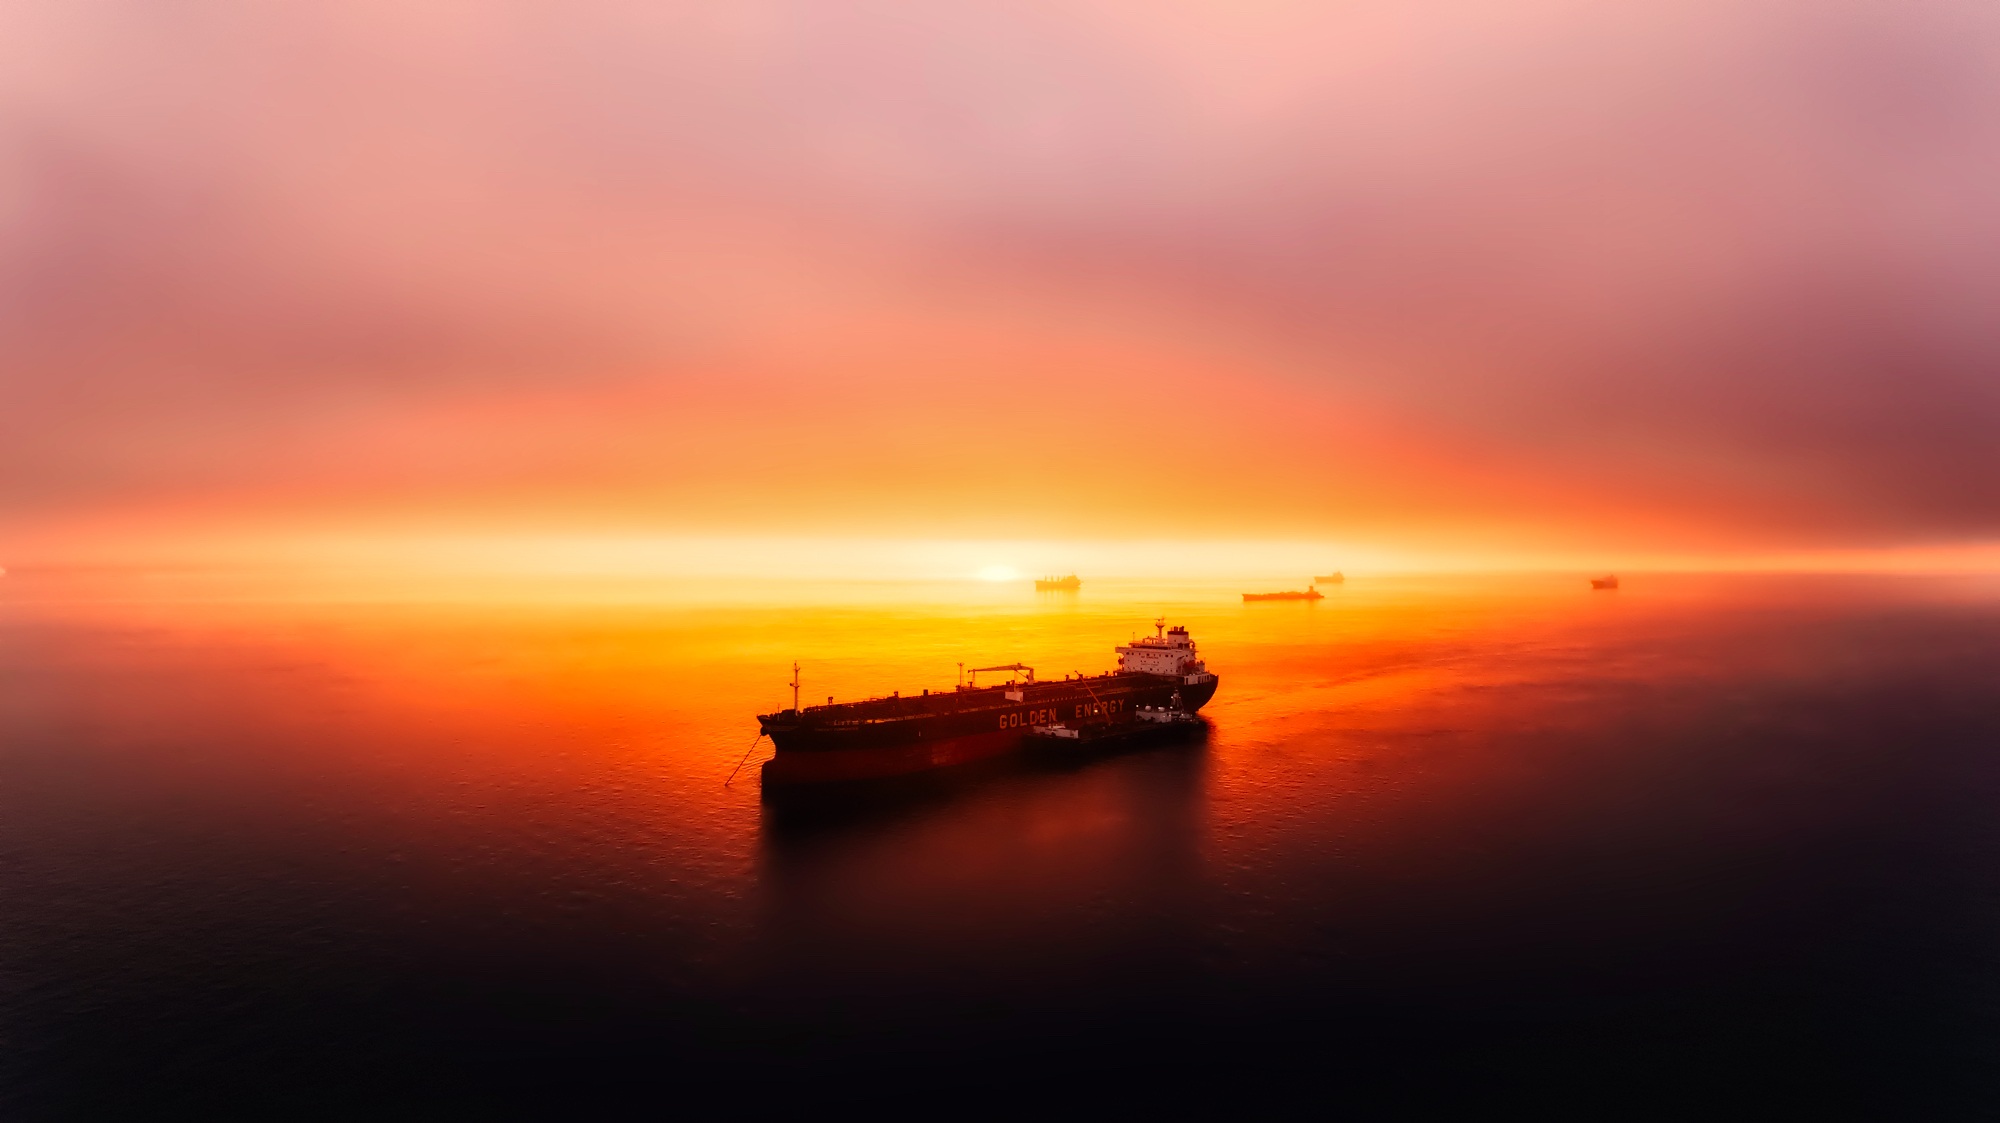 oil tanker, vehicles, tanker, ocean, ship, sunset